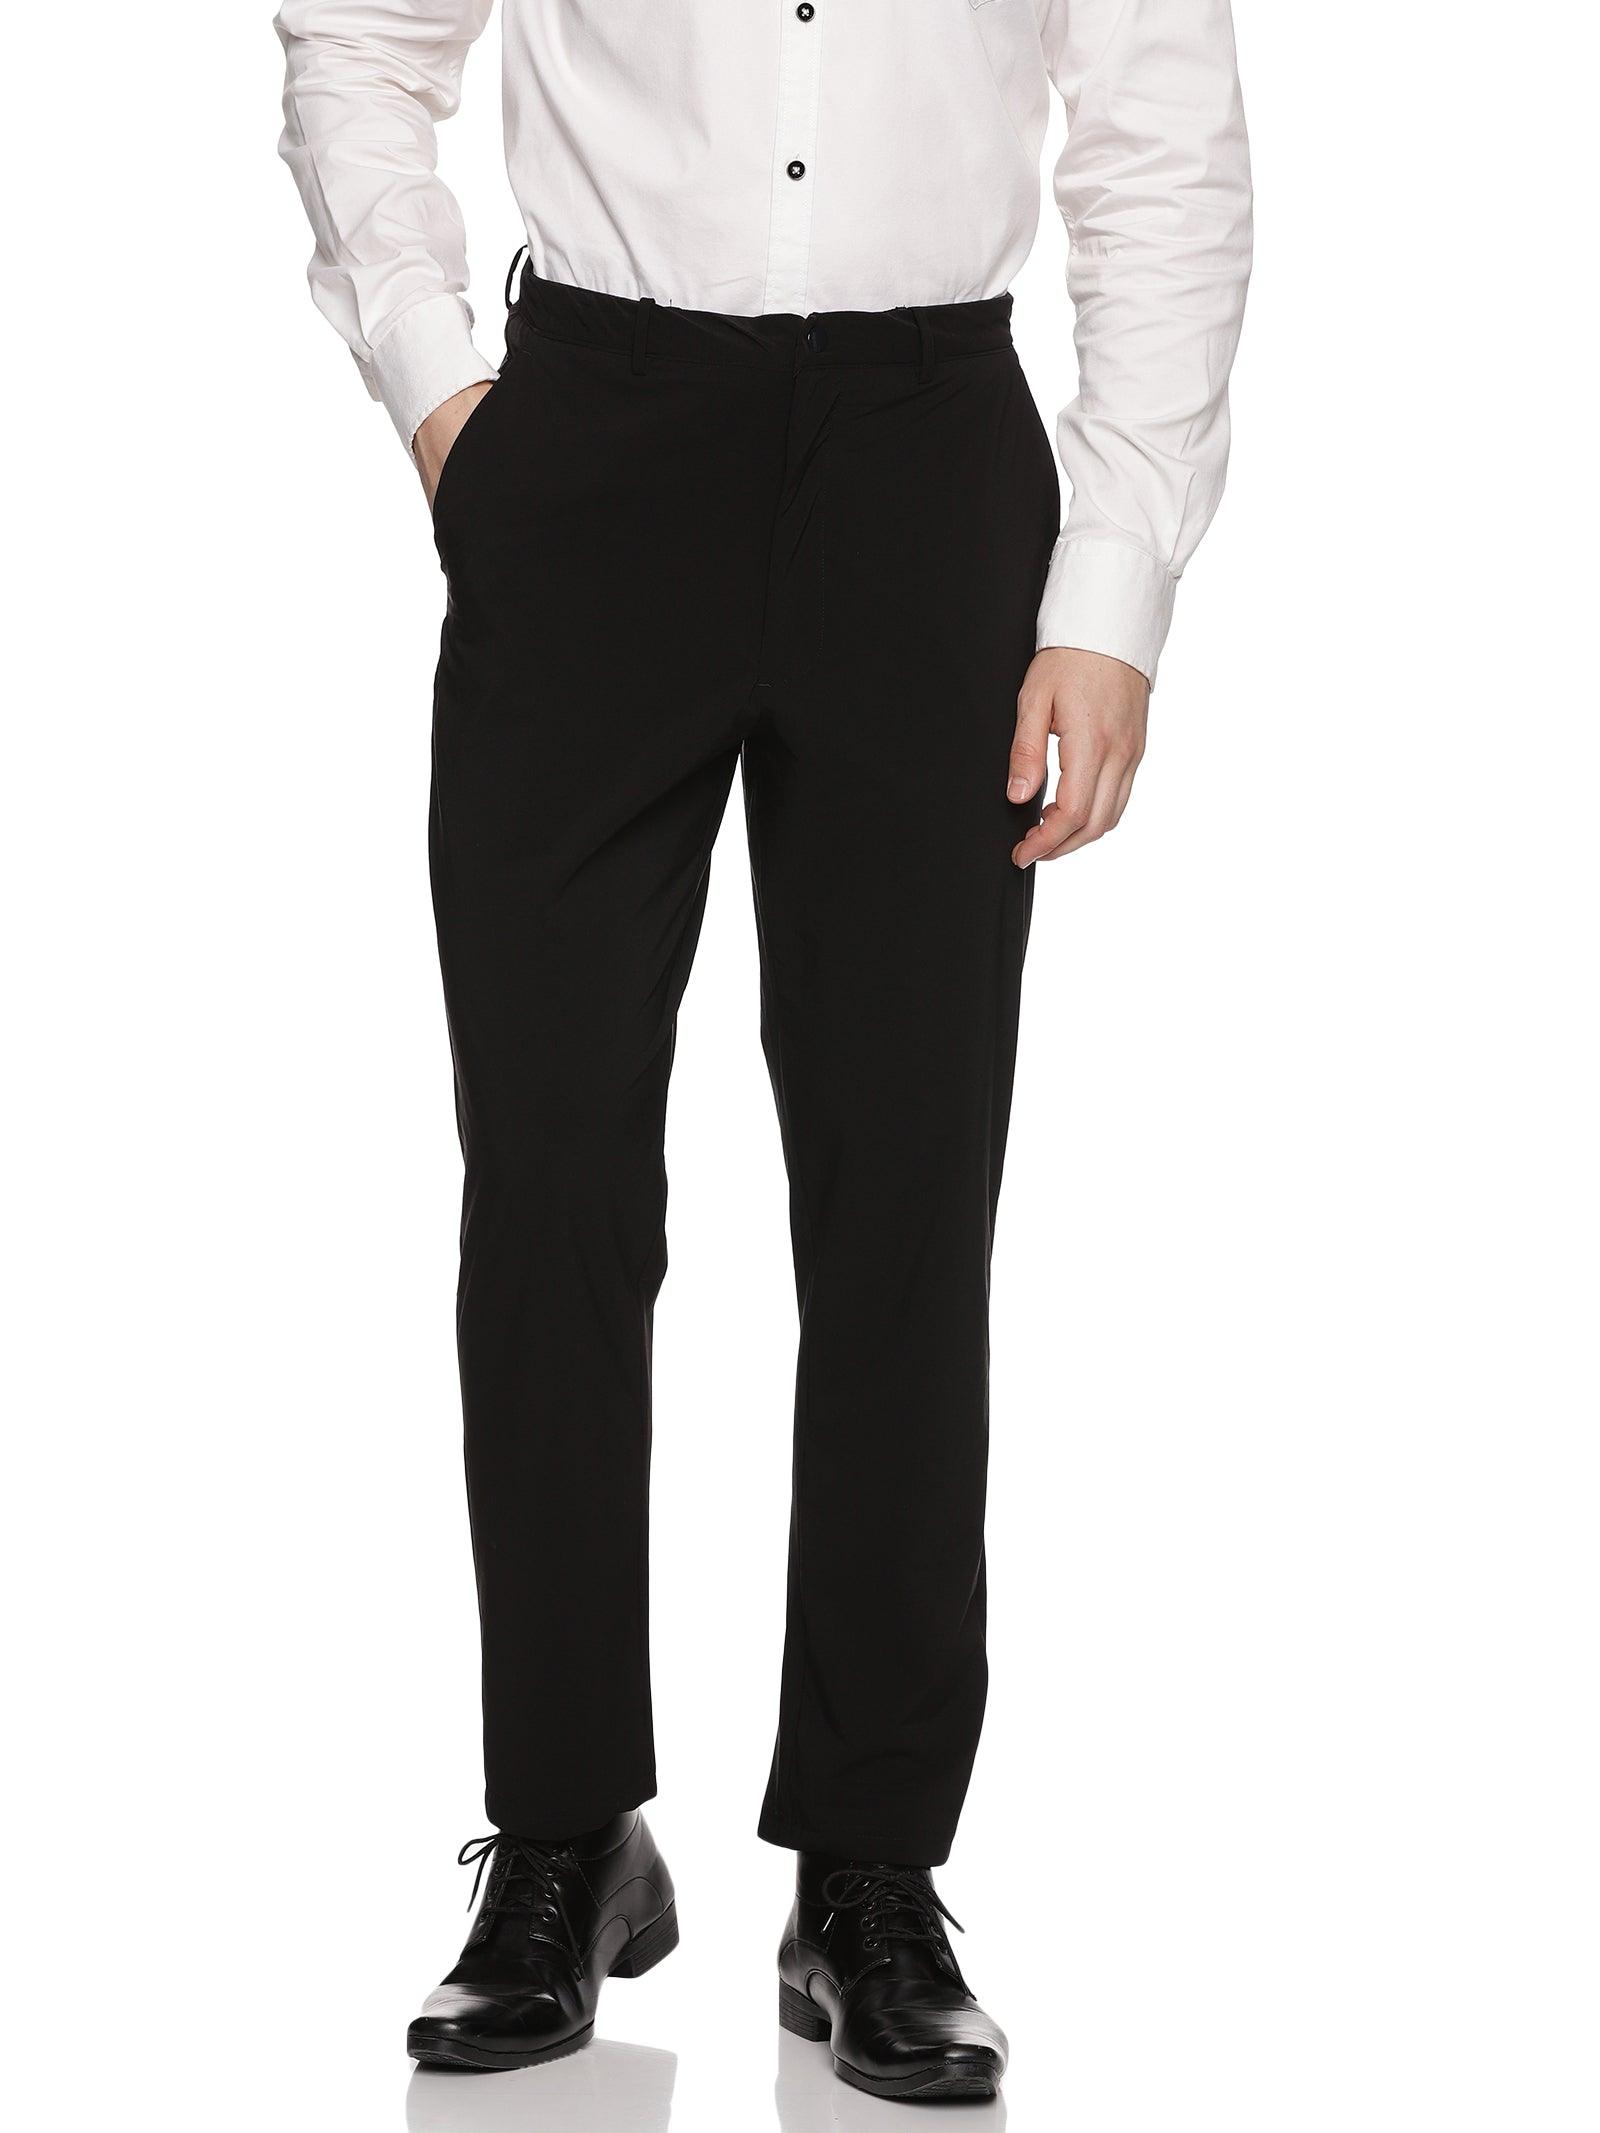 GYSAFJ Summer Men Dress Pants Suit Pants Male Business Men's Pants  Middle-Aged Casual Pants Black 30 at Amazon Men's Clothing store